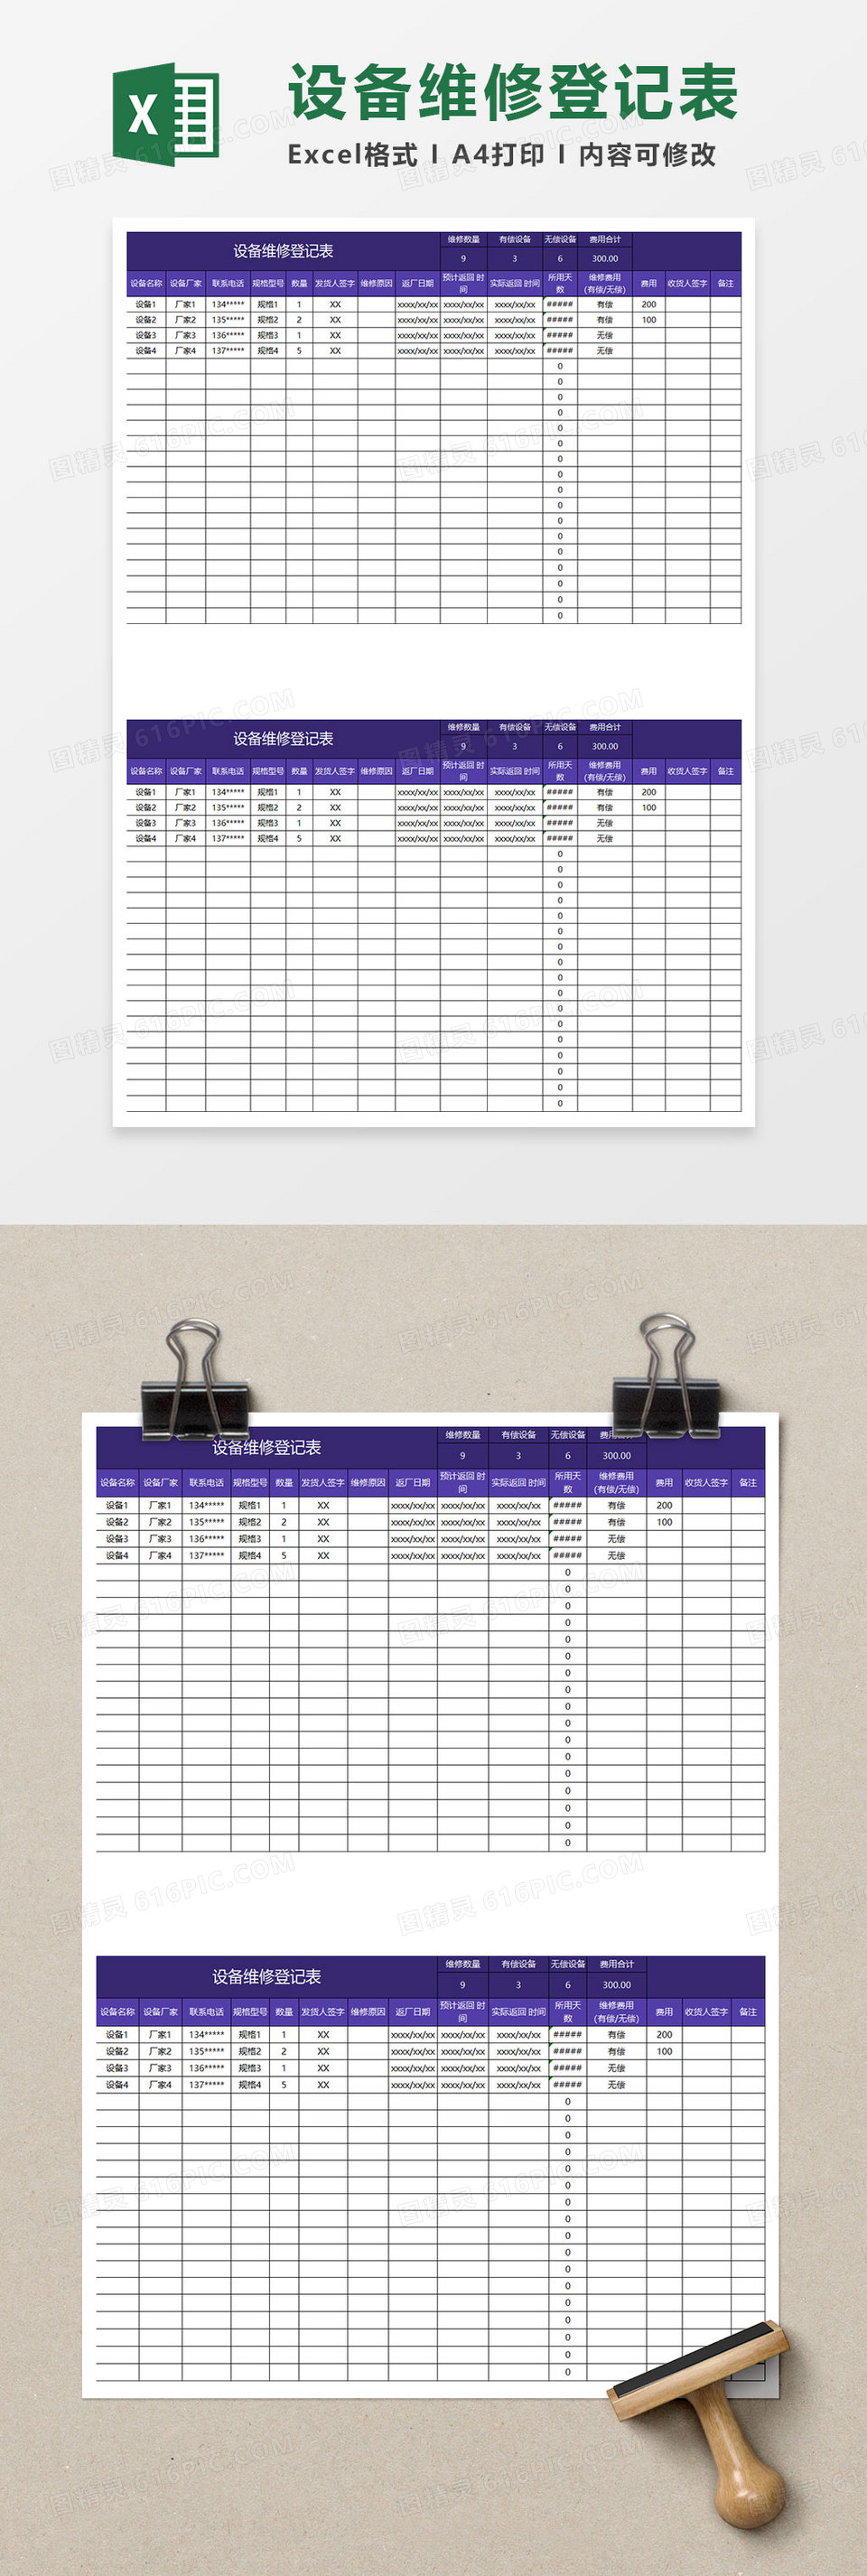 紫色简约设备维修登记表